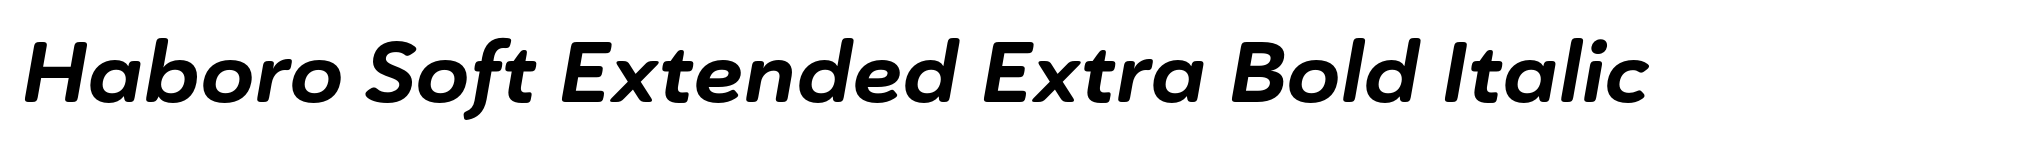 Haboro Soft Extended Extra Bold Italic image